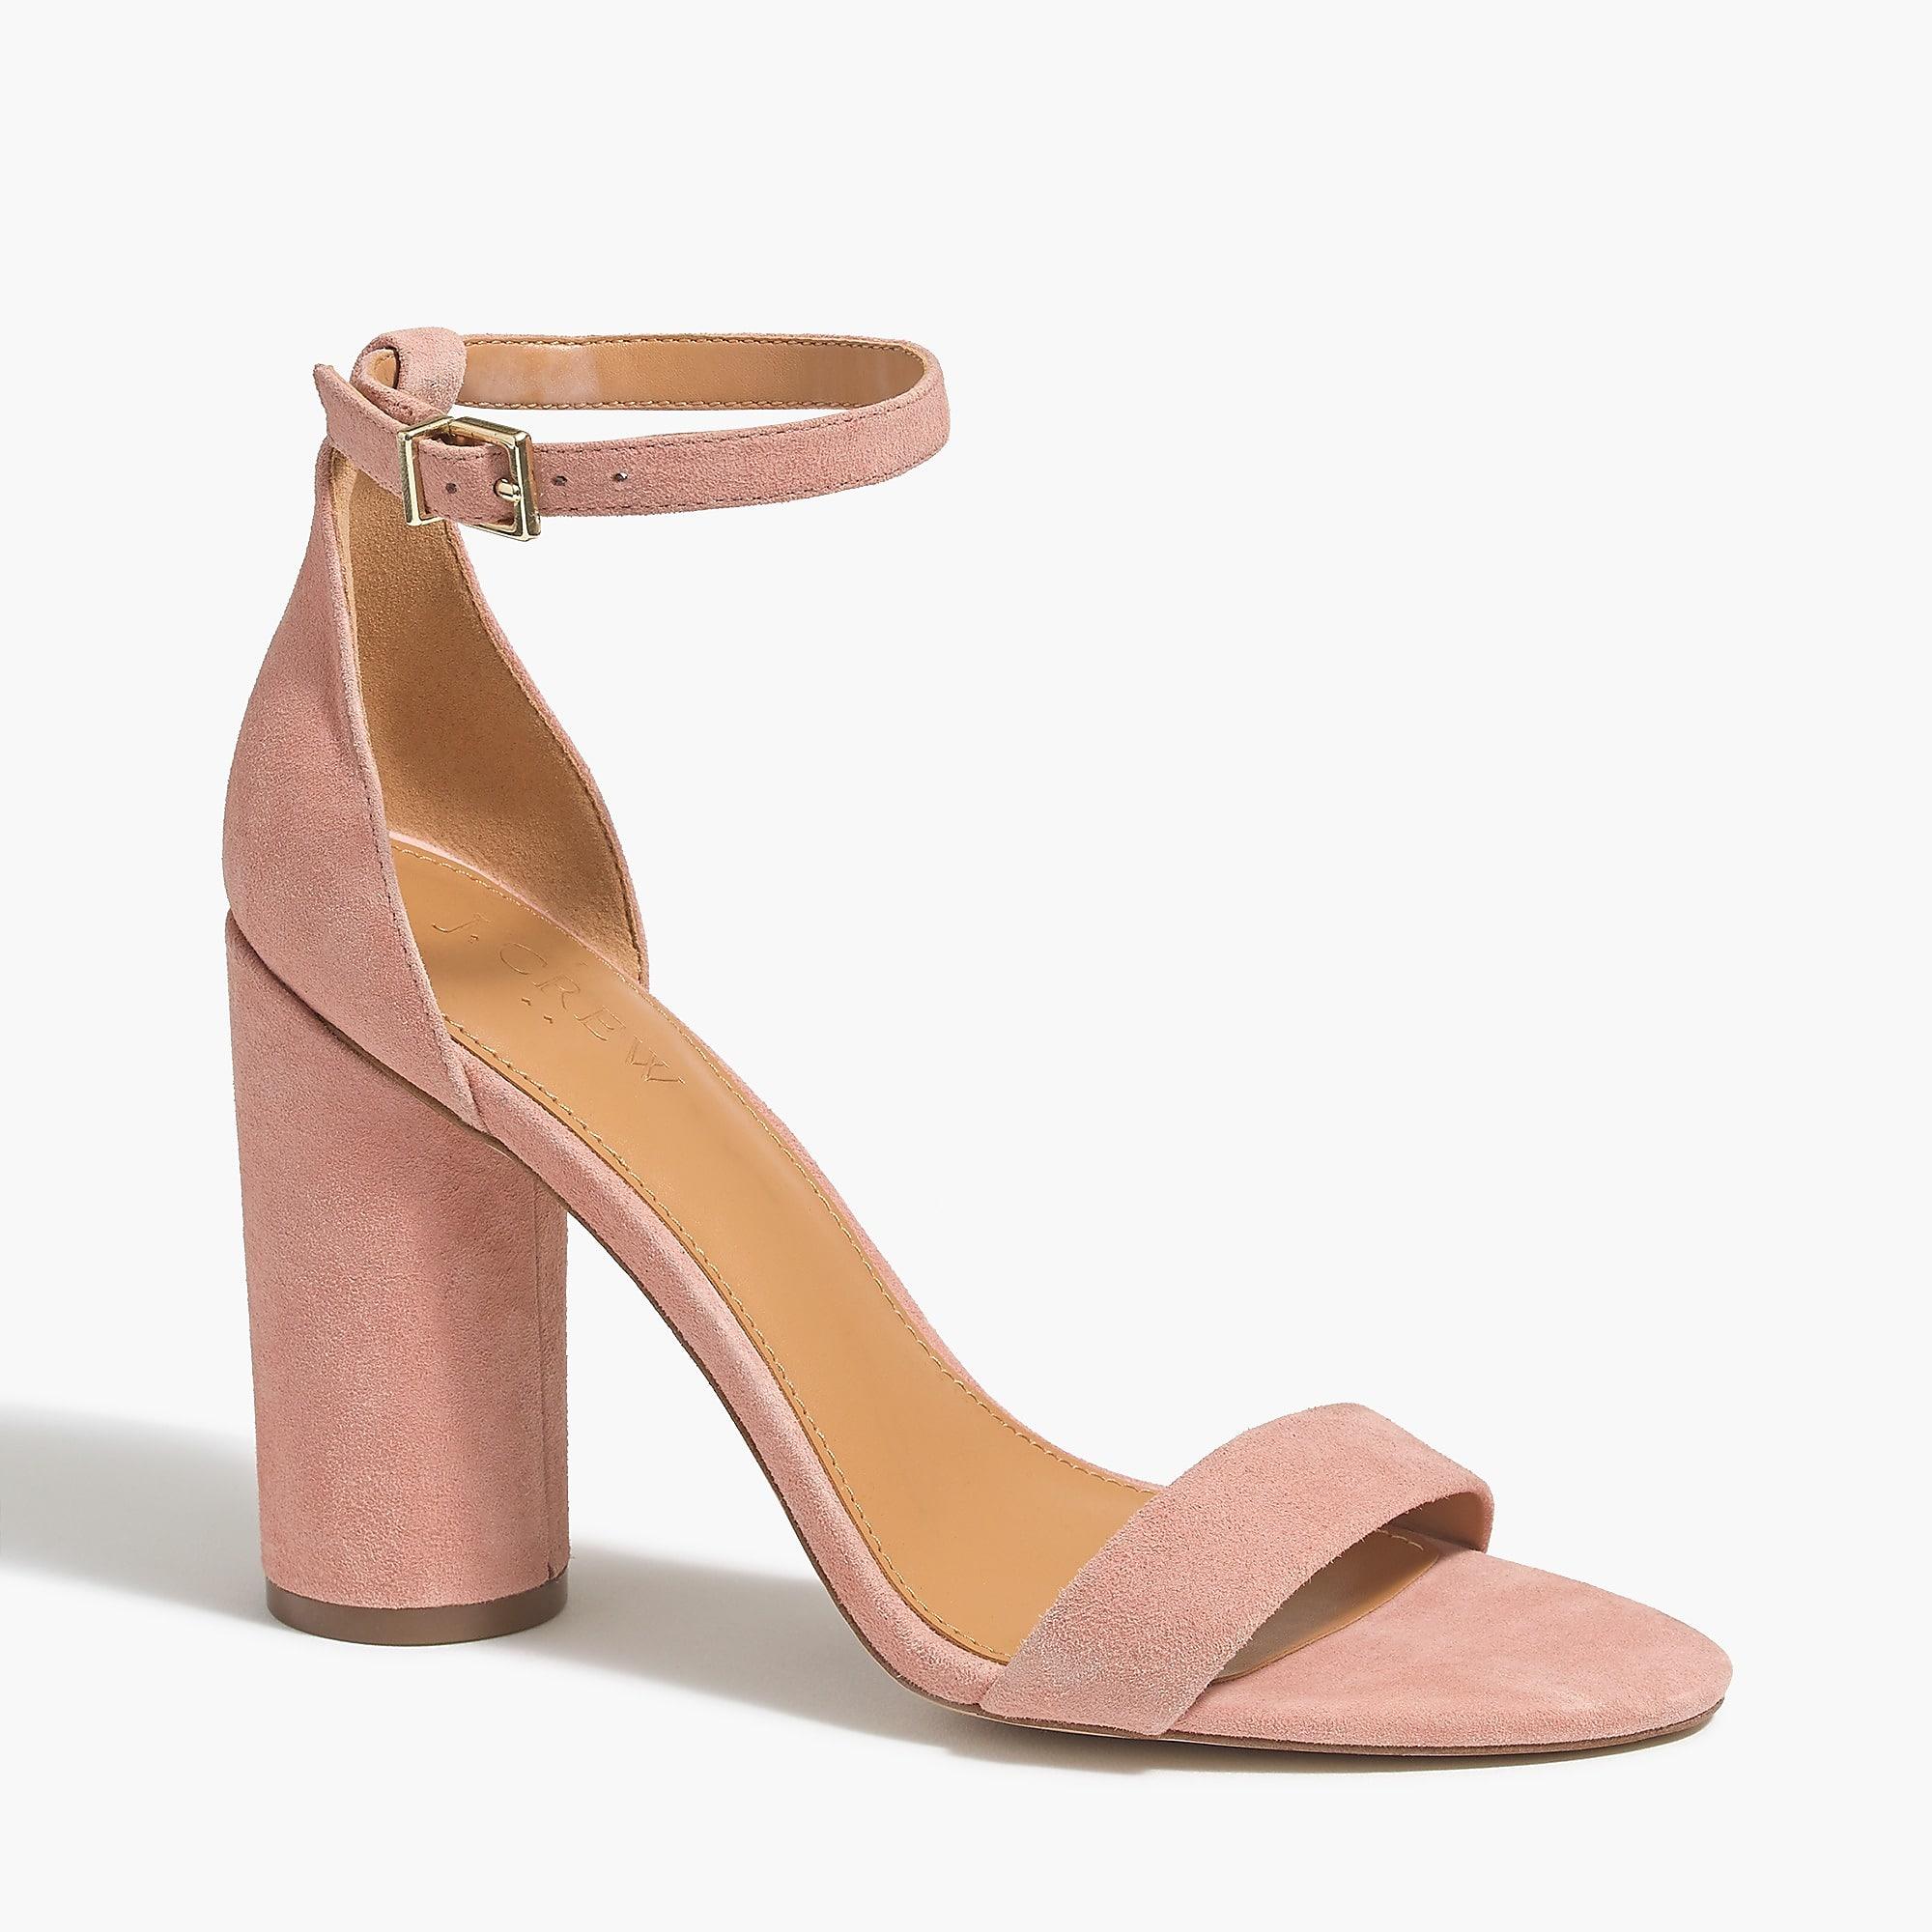 J.Crew Suede Block-heel Sandals in Faded Guava (Pink) - Lyst